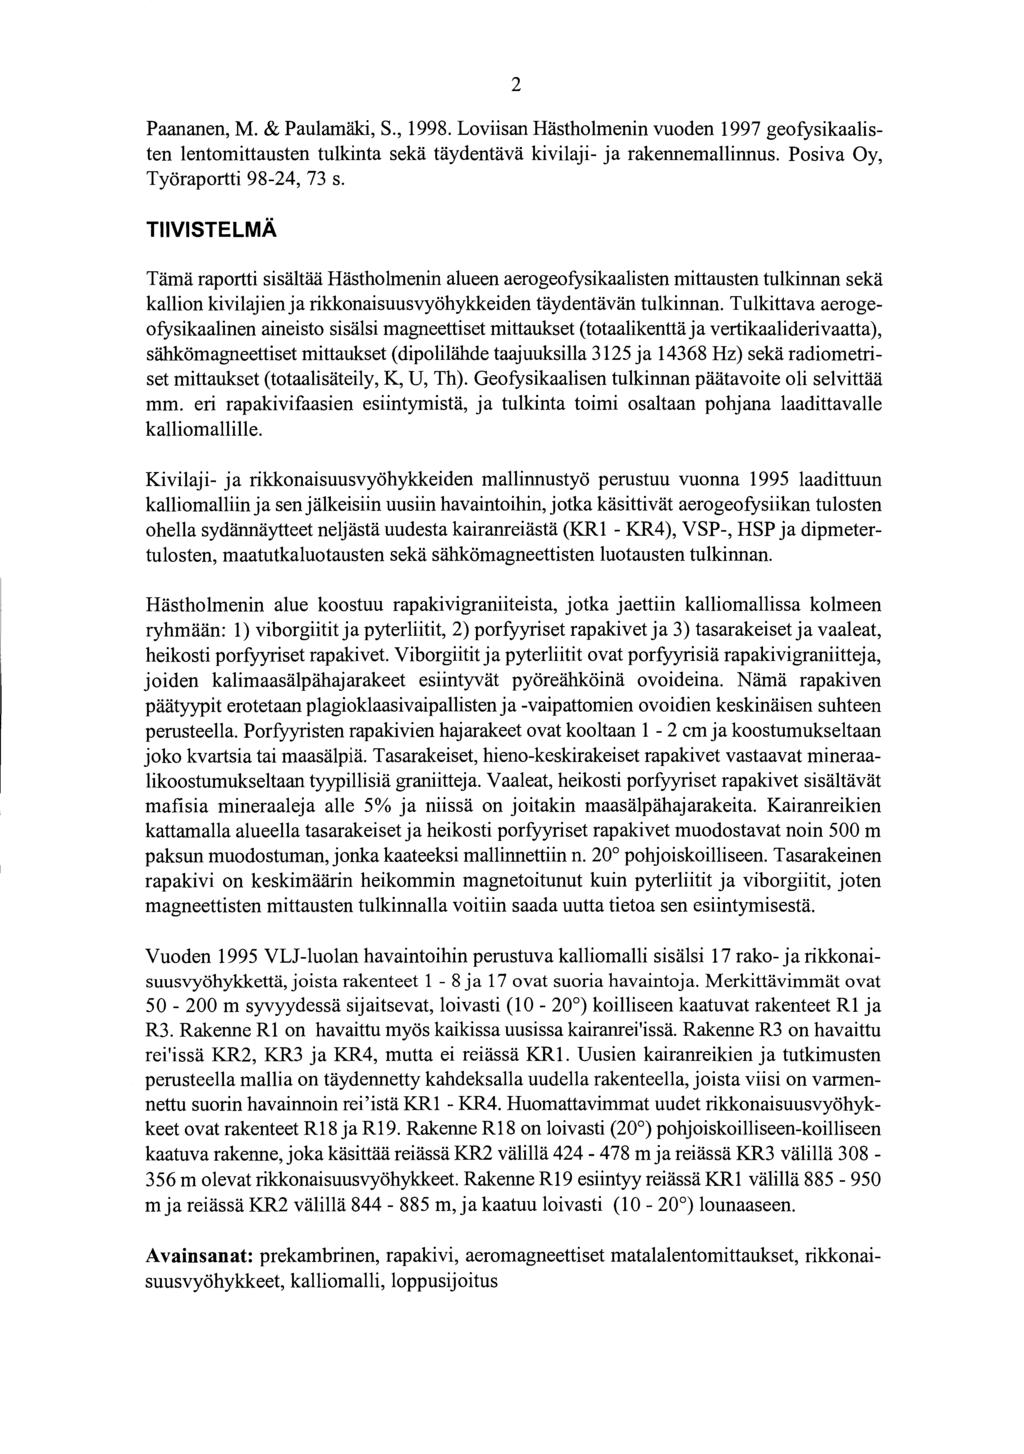 2 Paananen, M. & Paulamäki, S., 1998. Loviisan Hästholmenin vuoden 1997 geofysikaalisten lentomittausten tulkinta sekä täydentävä kivilaji- ja rakennemallinnus. Posiva Oy, Työraportti 98-24, 73 s.